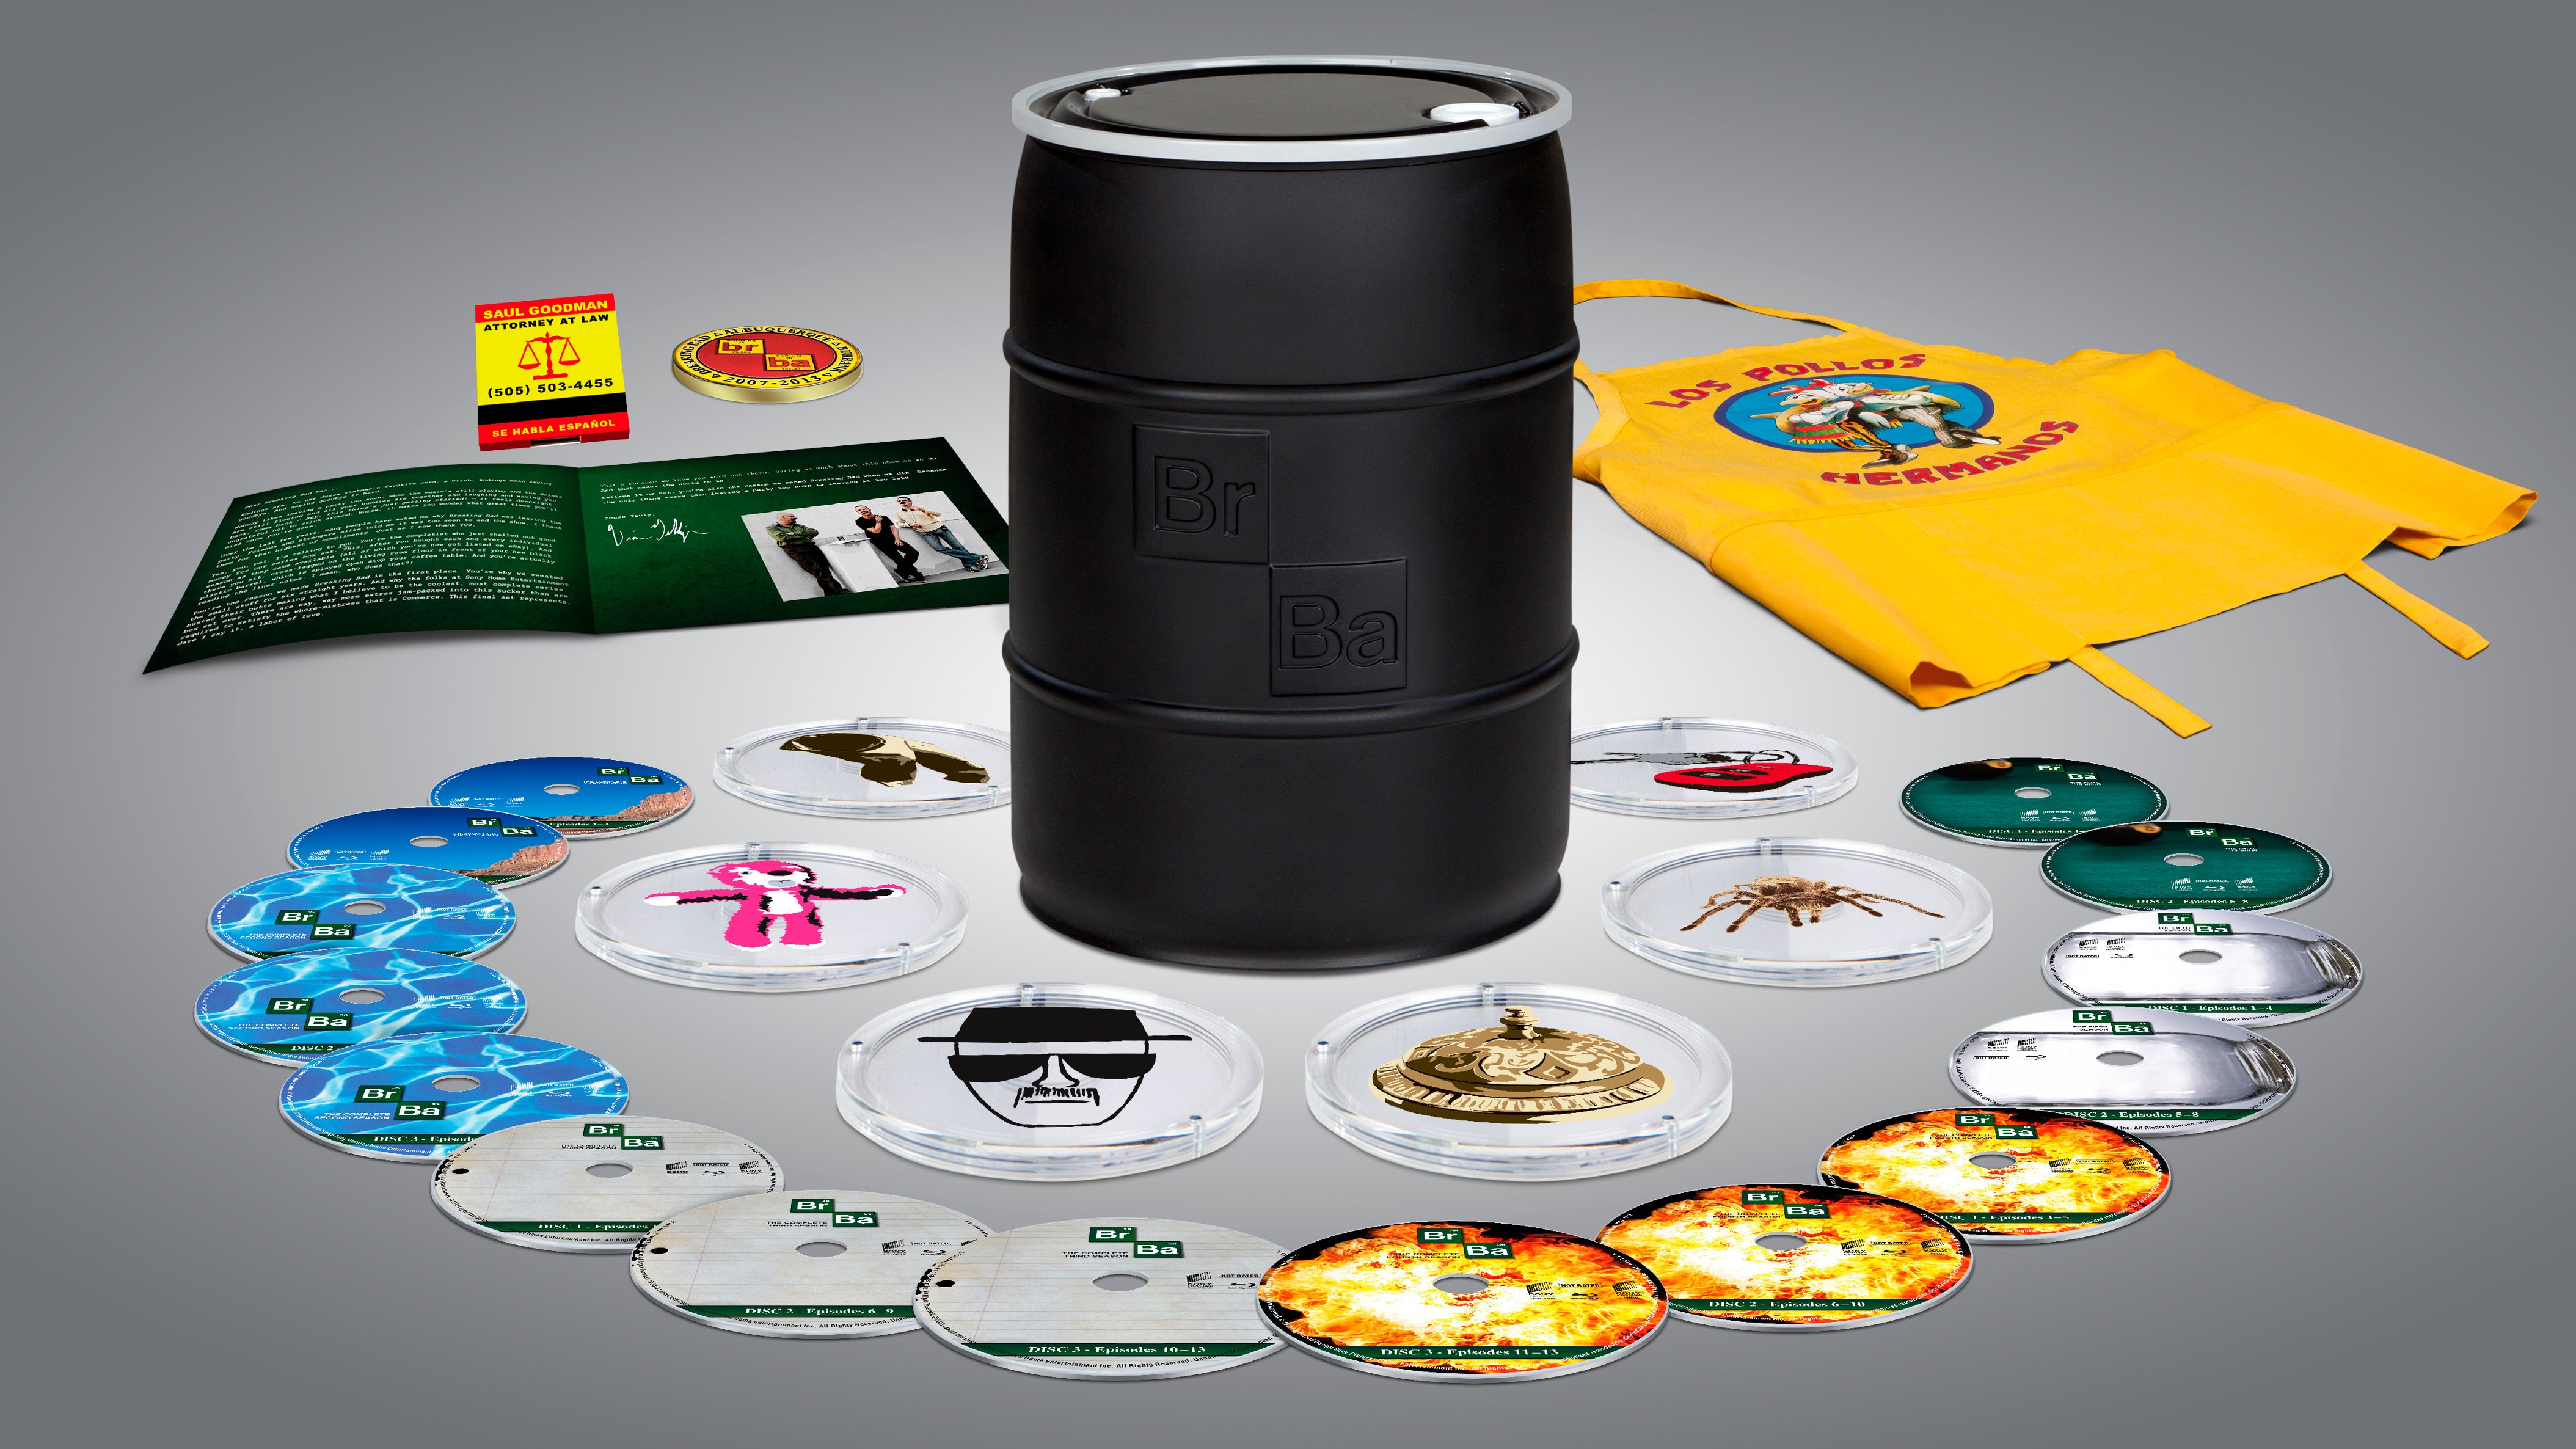 Breaking Bad: The Complete Series [Blu-ray] - Best Buy